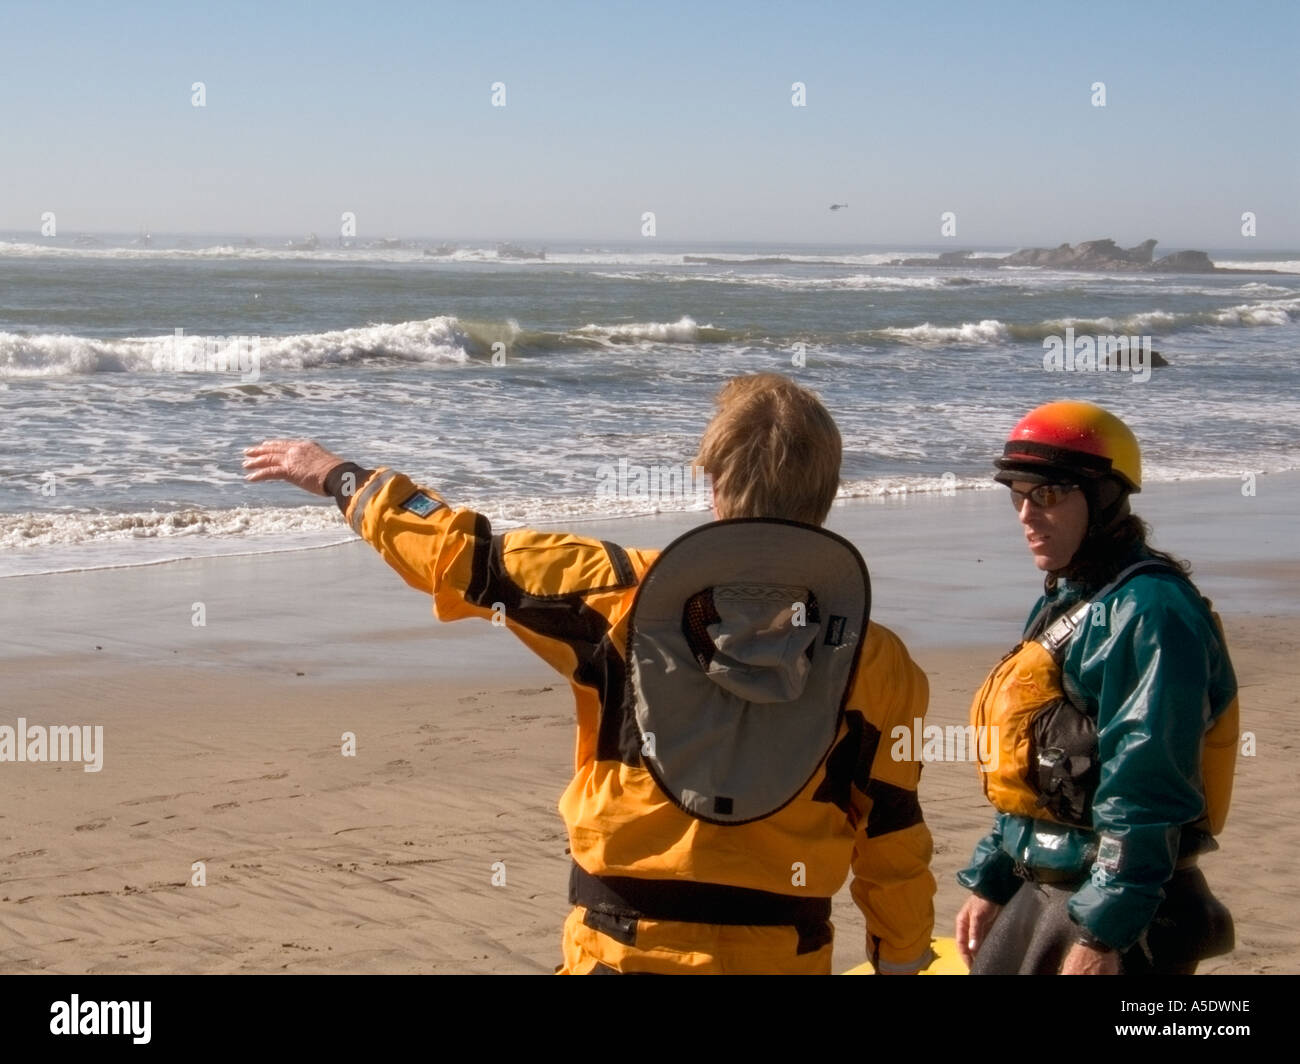 La evaluación del riesgo por parte del equipo de rescate antes de una competencia de surf Foto de stock